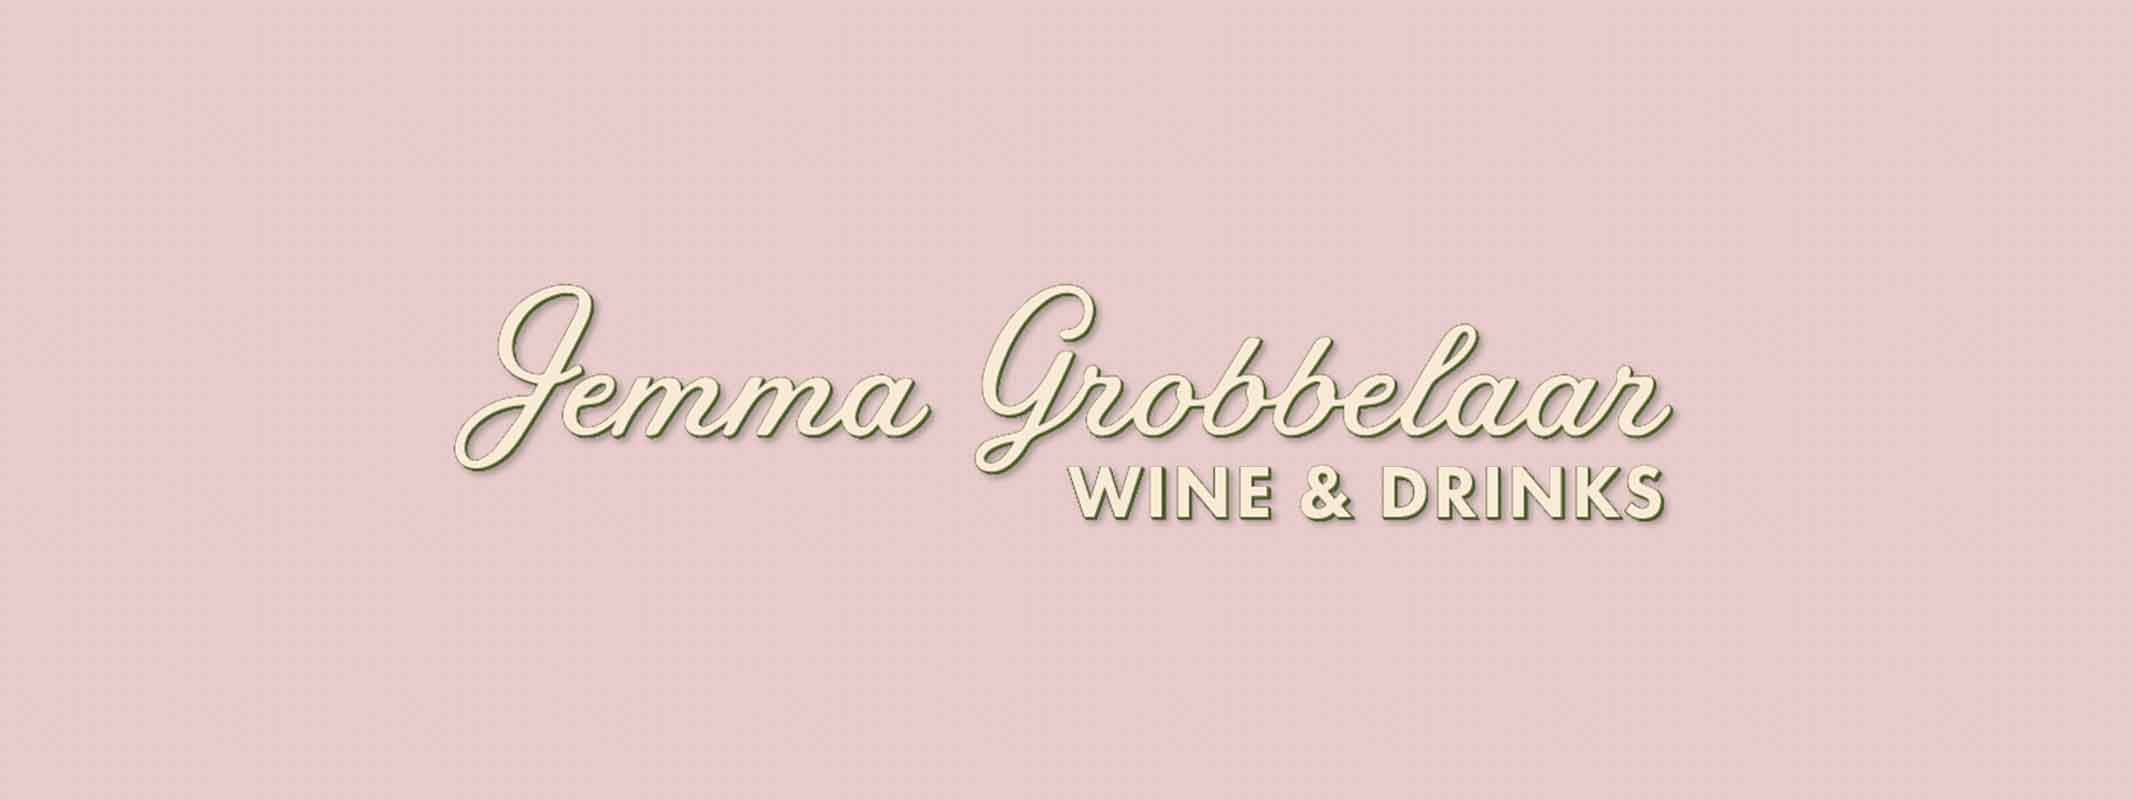 Jemma Grobbelaar Wine & Drinks logo on a styled background